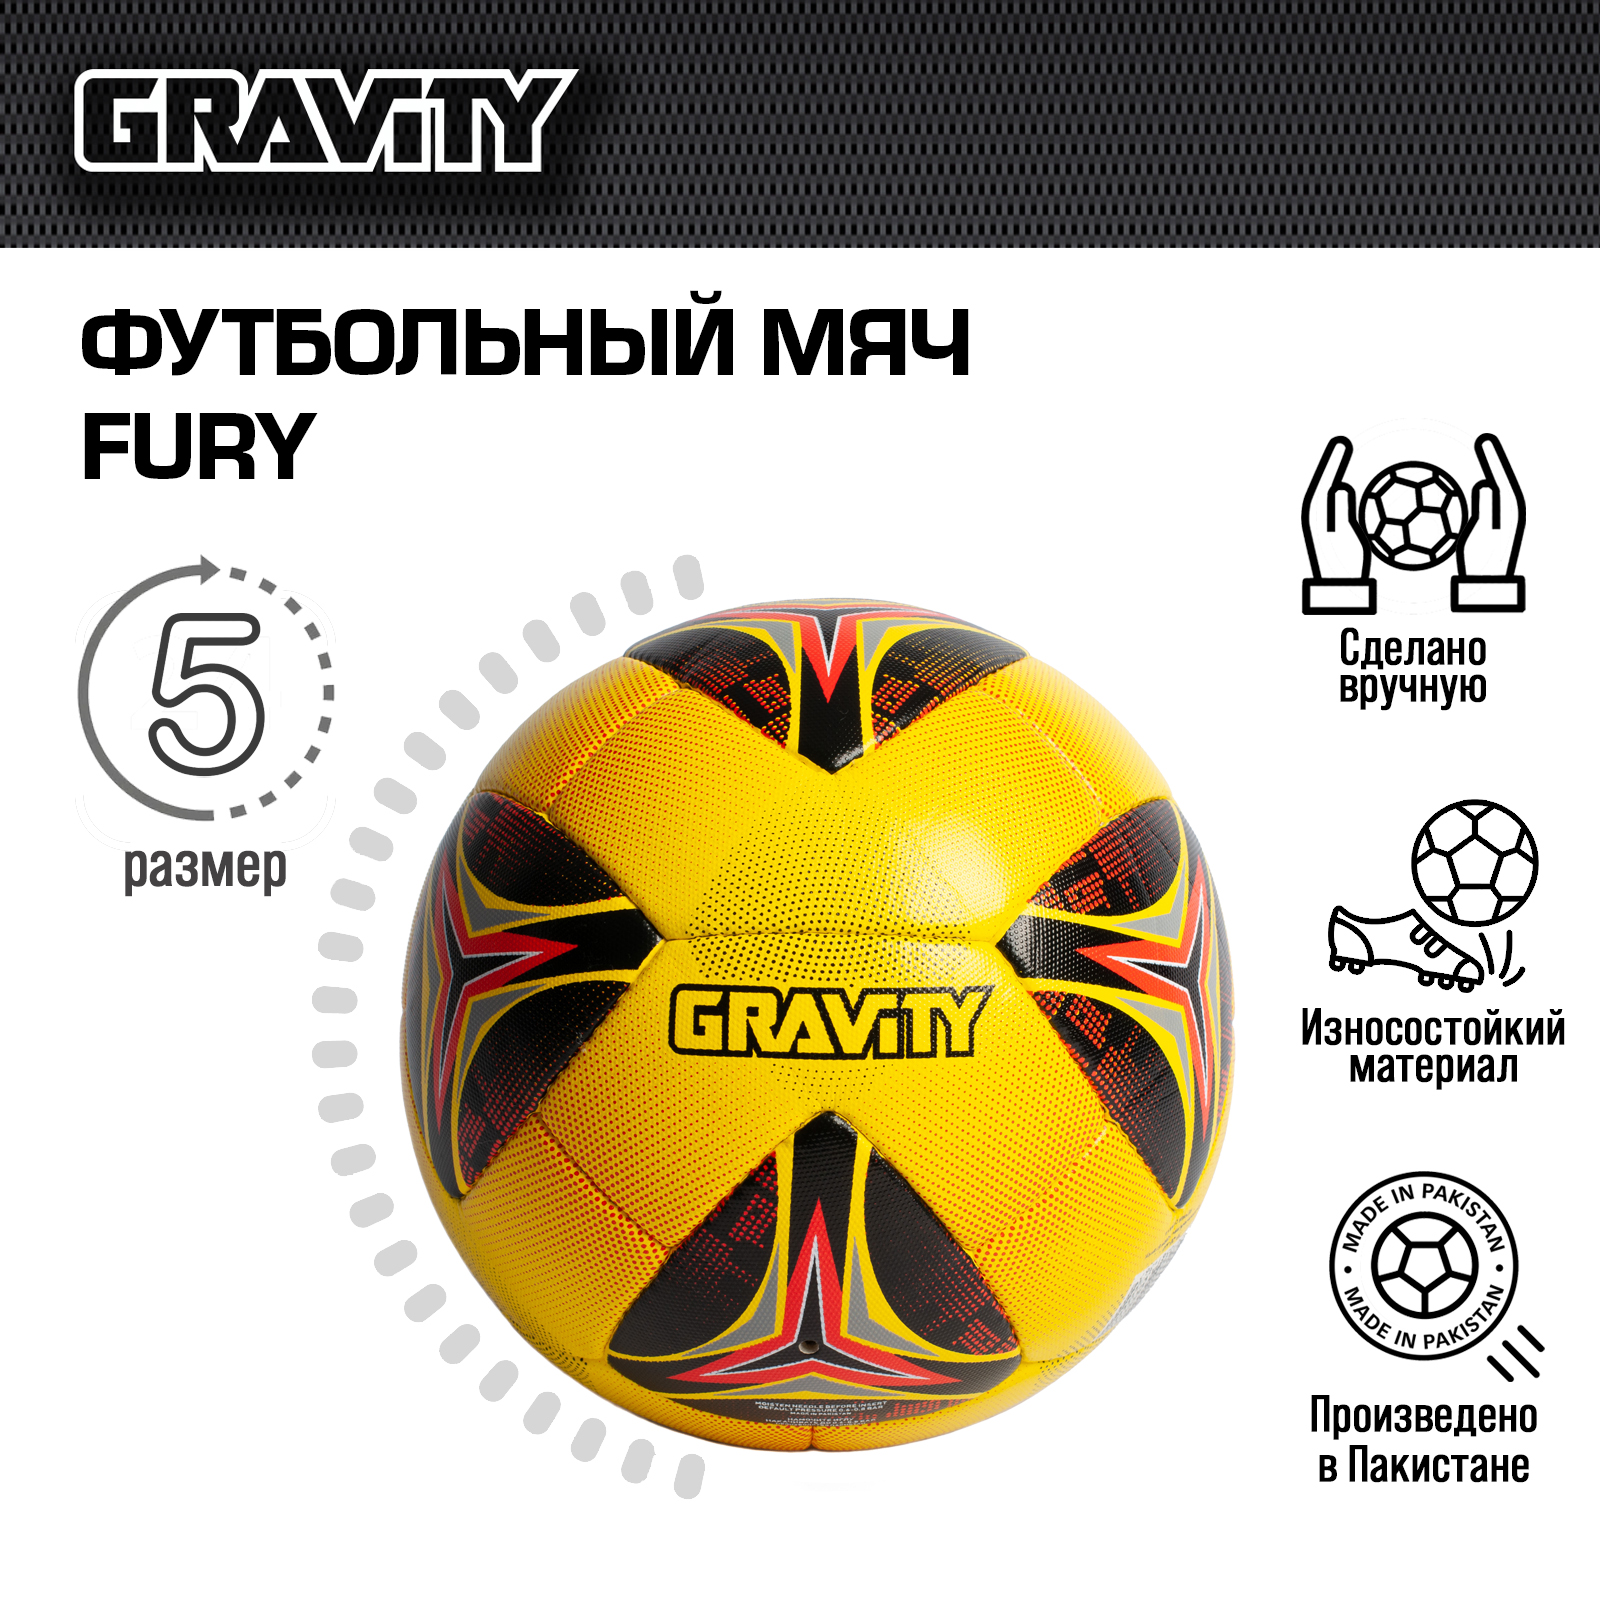 Футбольный мяч Gravity, ручная сшивка, FURY, размер 5